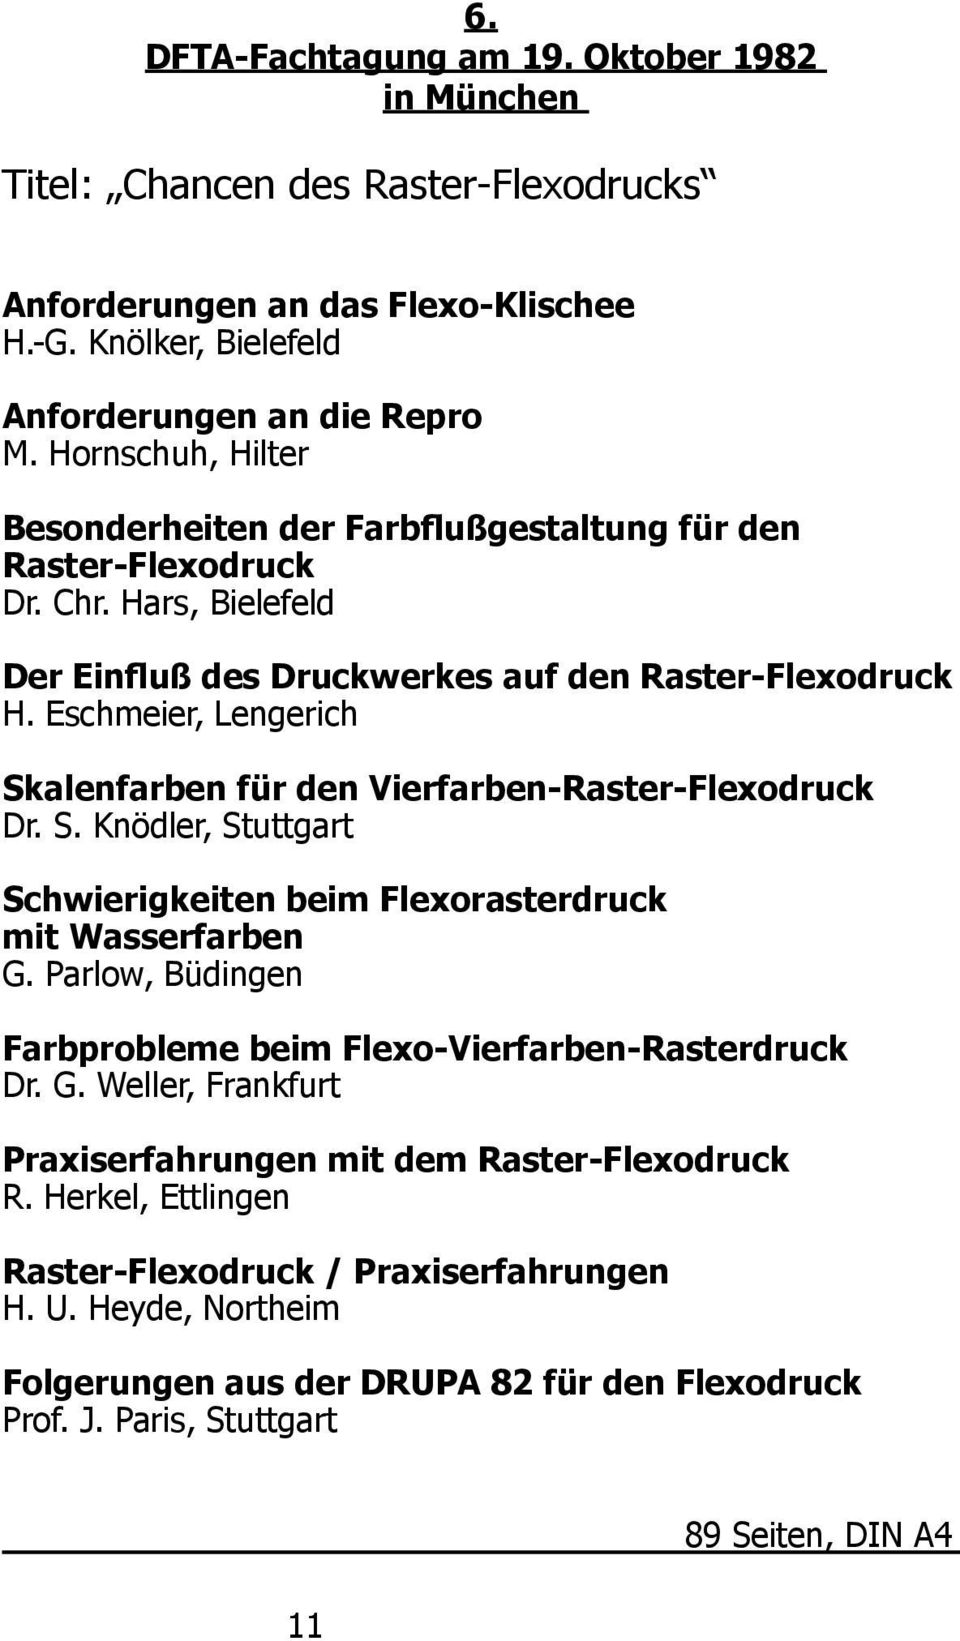 Eschmeier, Lengerich Skalenfarben für den Vierfarben-Raster-Flexodruck Dr. S. Knödler, Stuttgart Schwierigkeiten beim Flexorasterdruck mit Wasserfarben G.